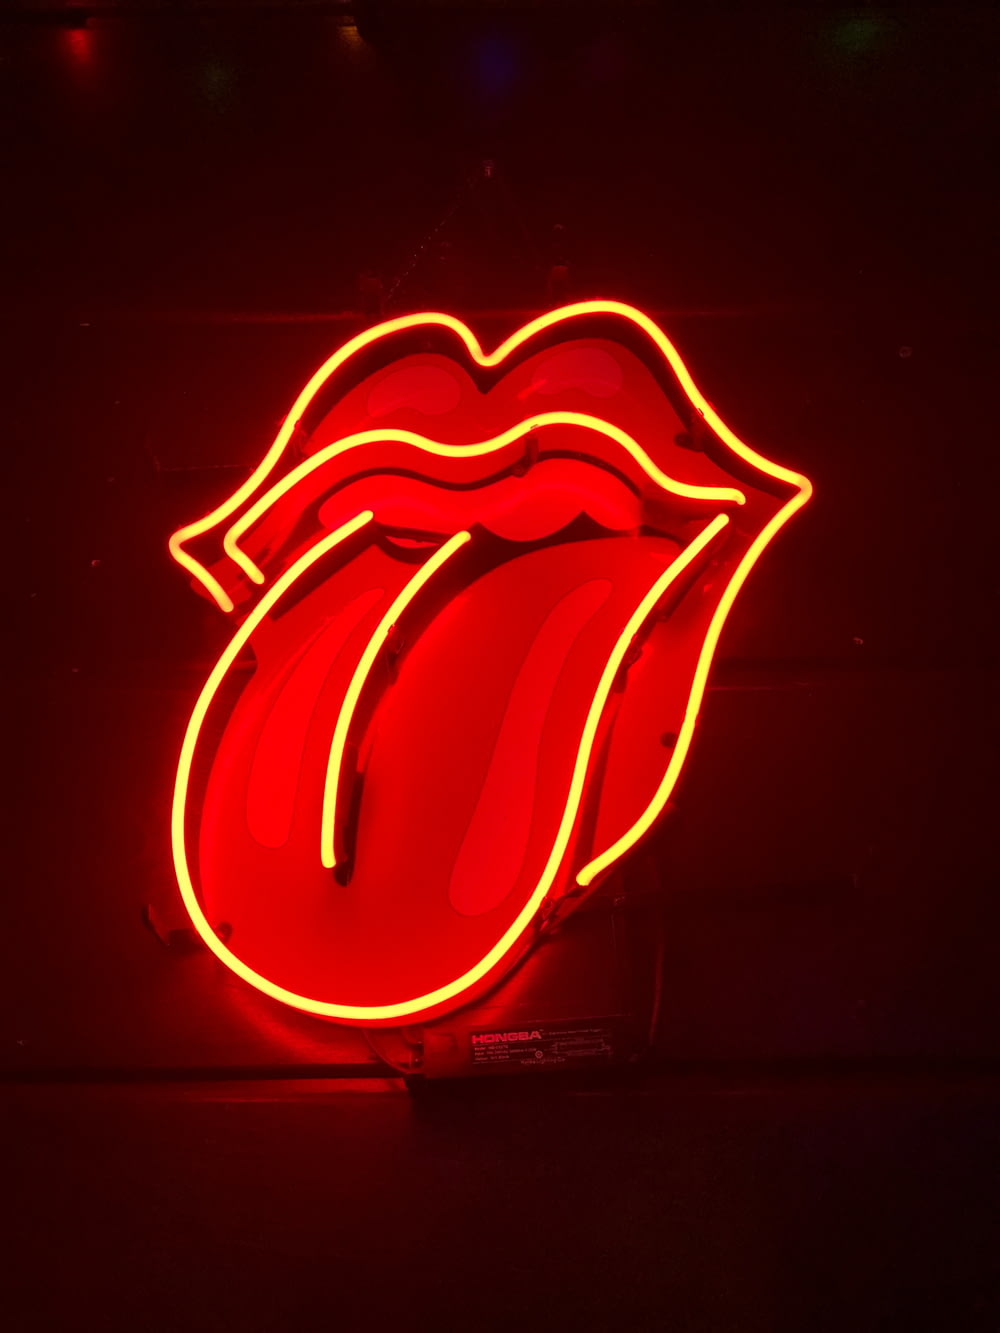 Rolling Stone LED light signage